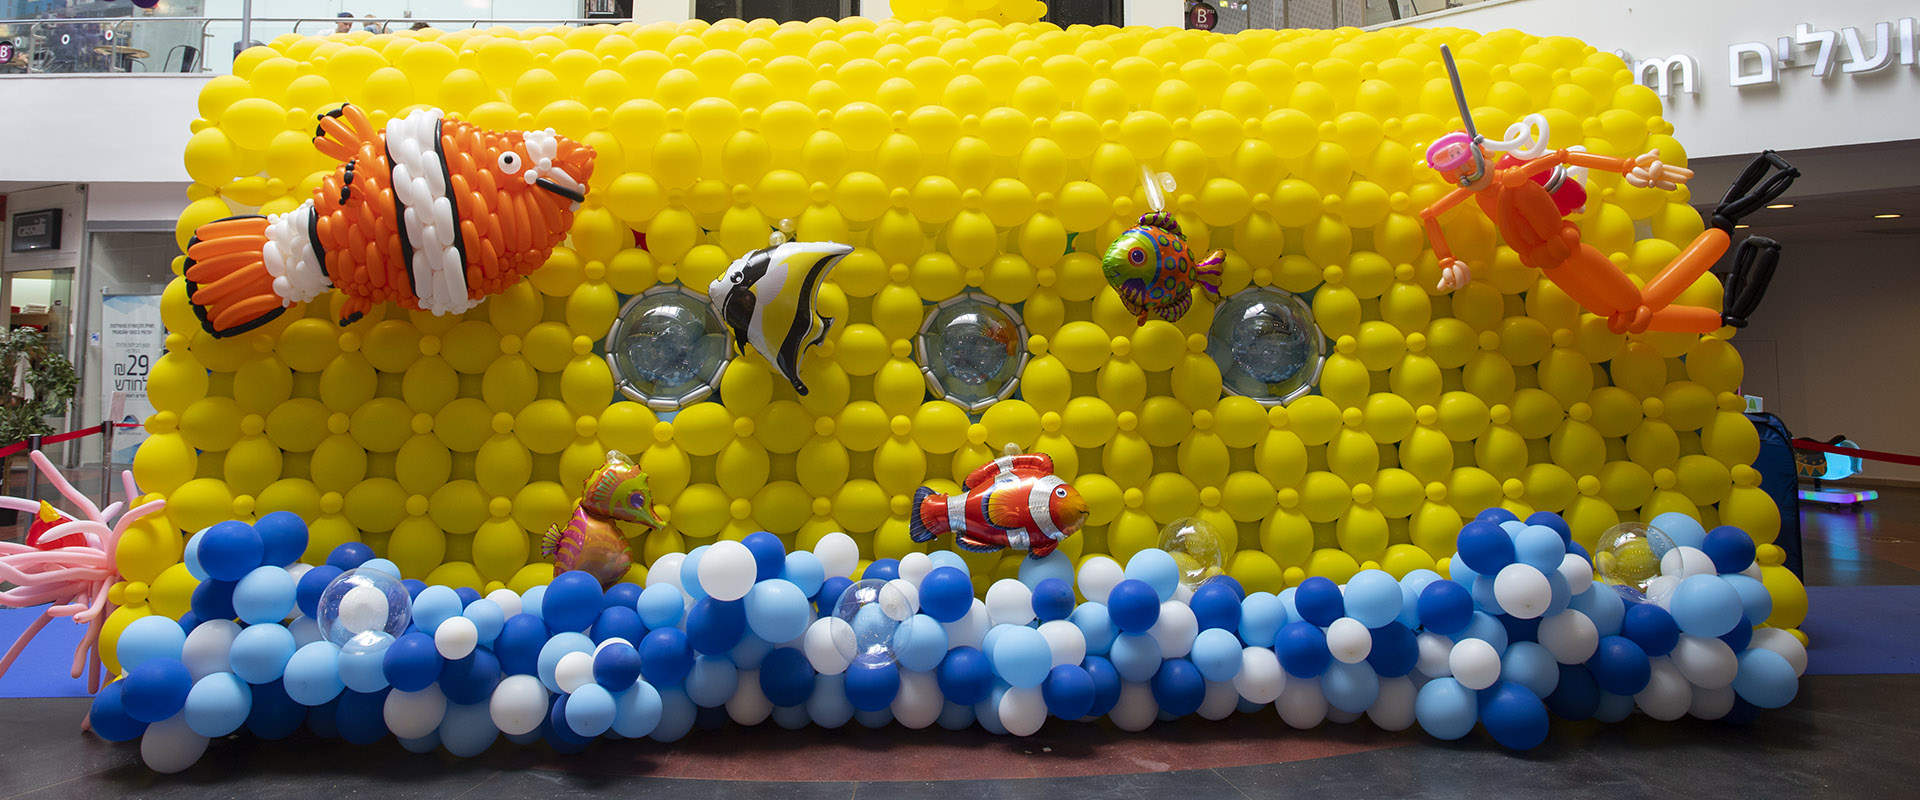 צוללת מבלונים בפסטיבל הבלונים בדיזנגוף סנטר